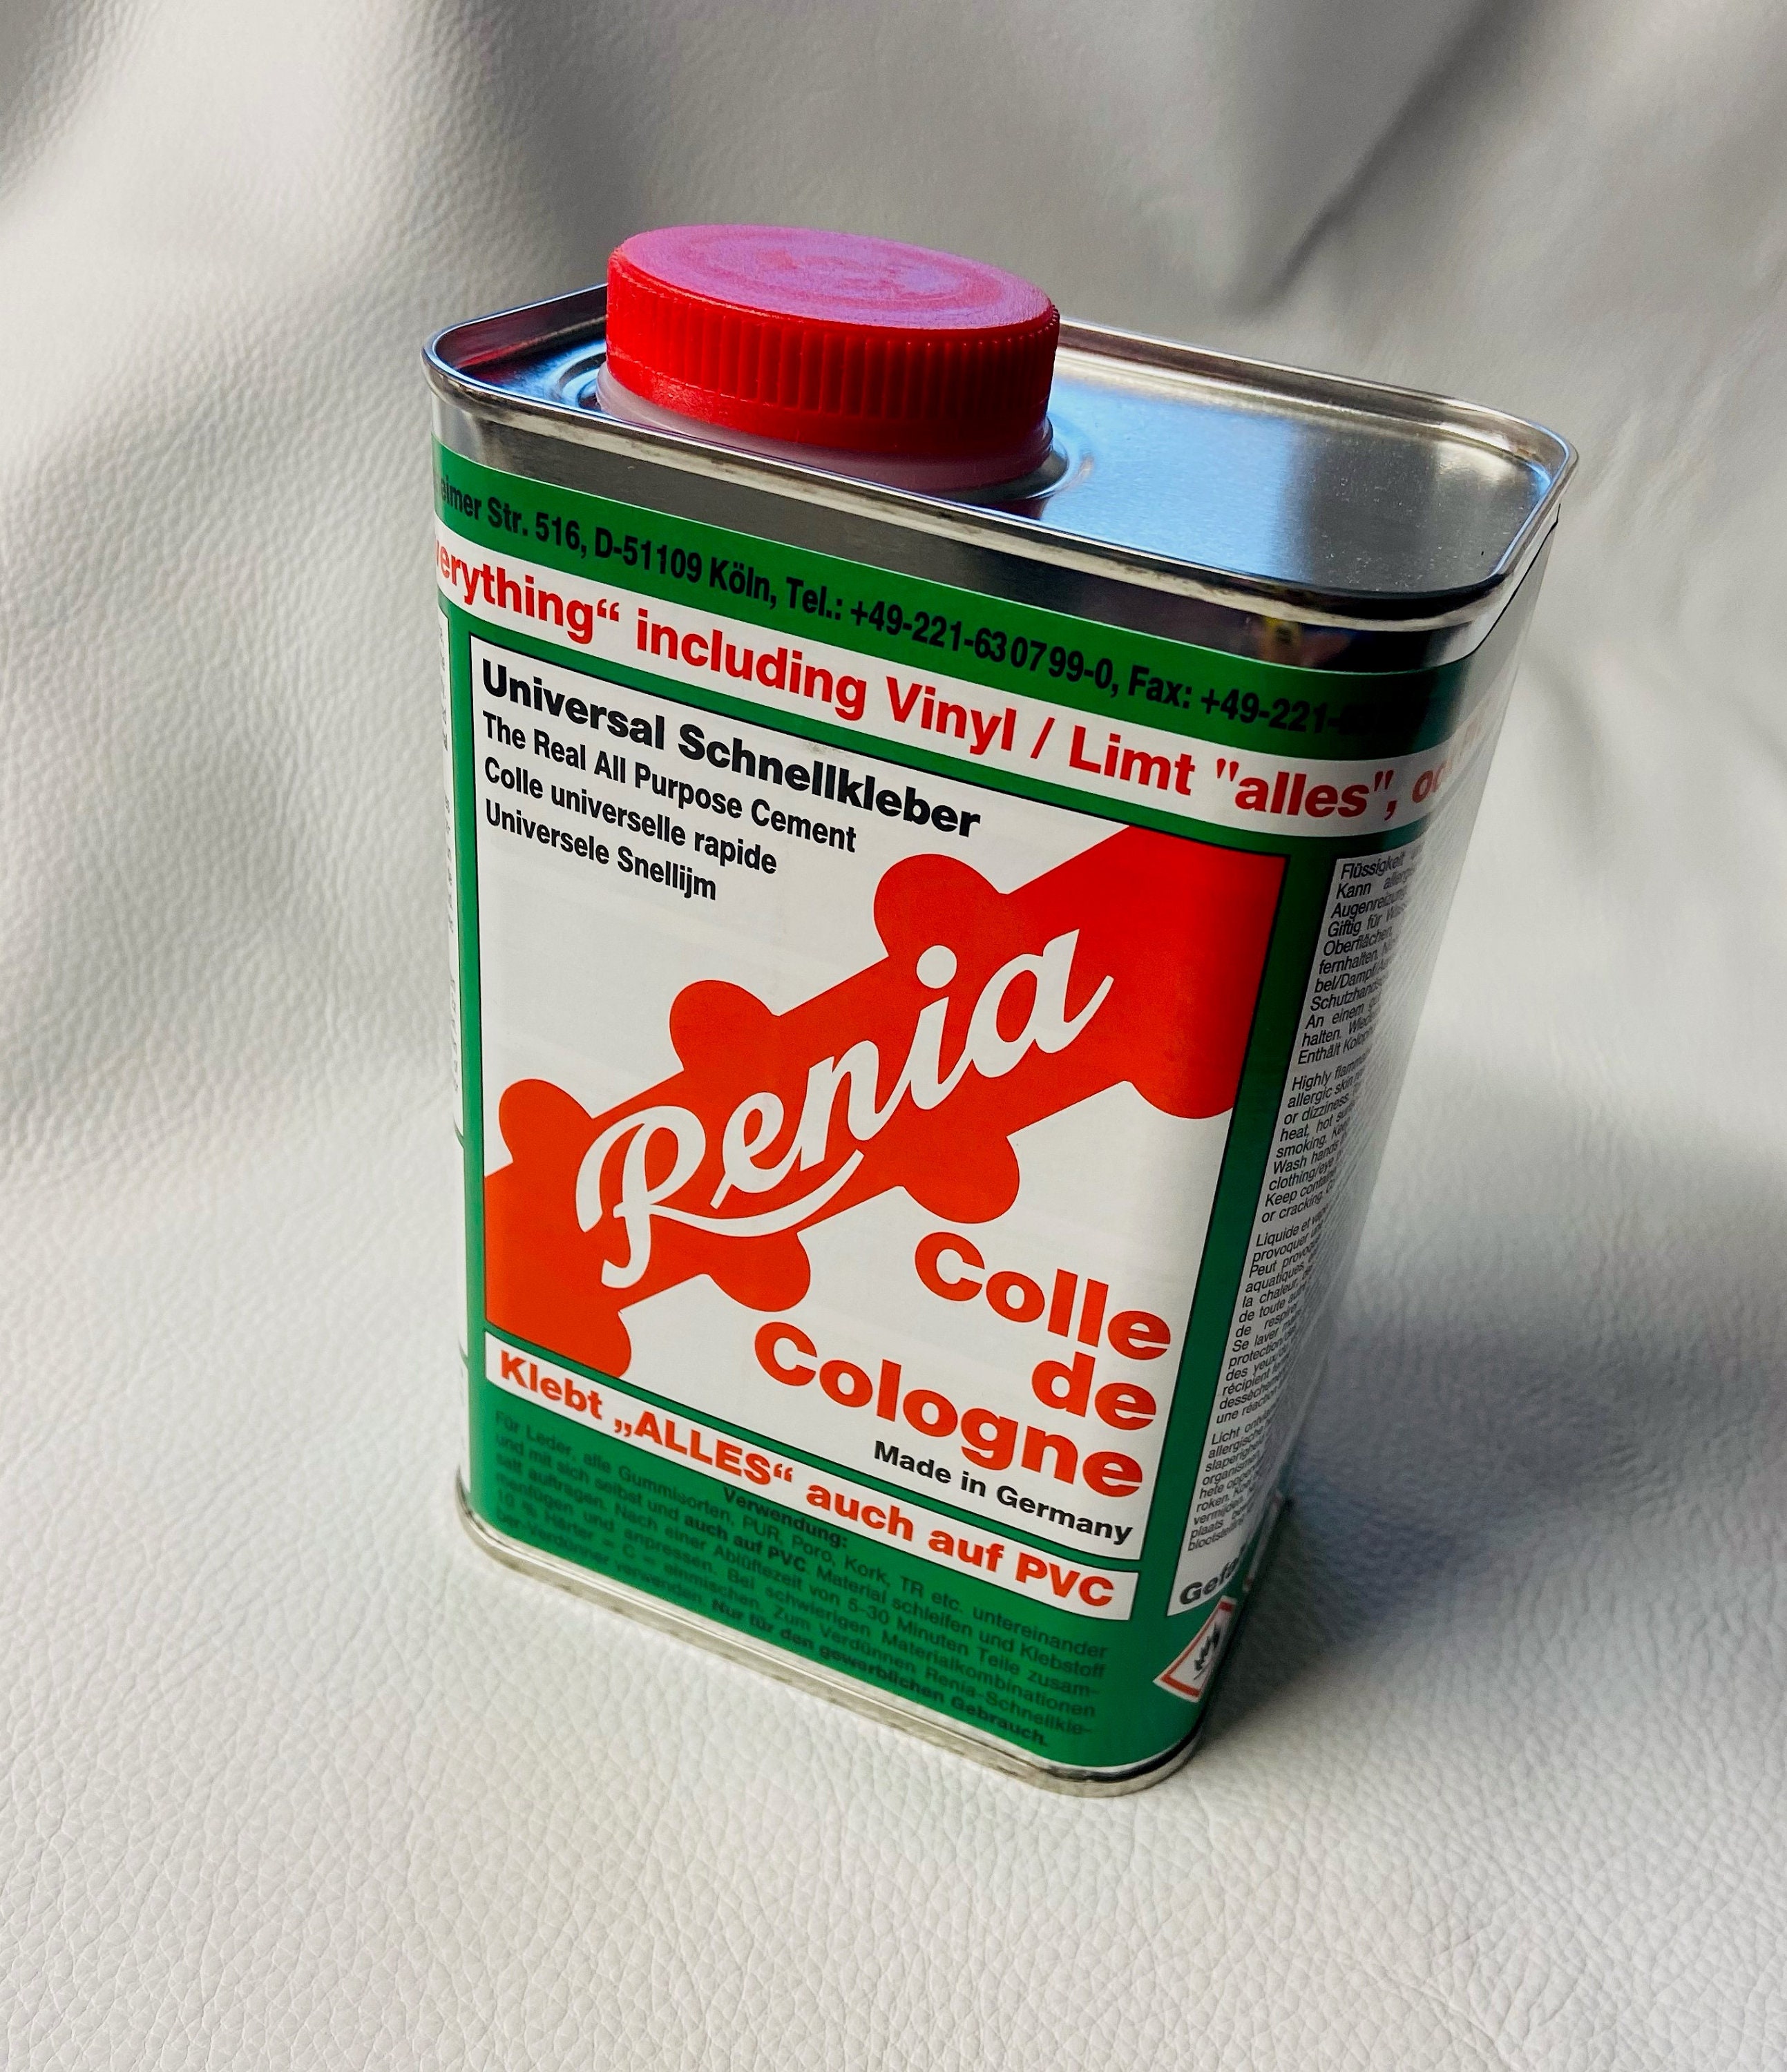 Renia Colle de Cologne (1 Gallon) - All Purpose Cement - Contact Adhesive